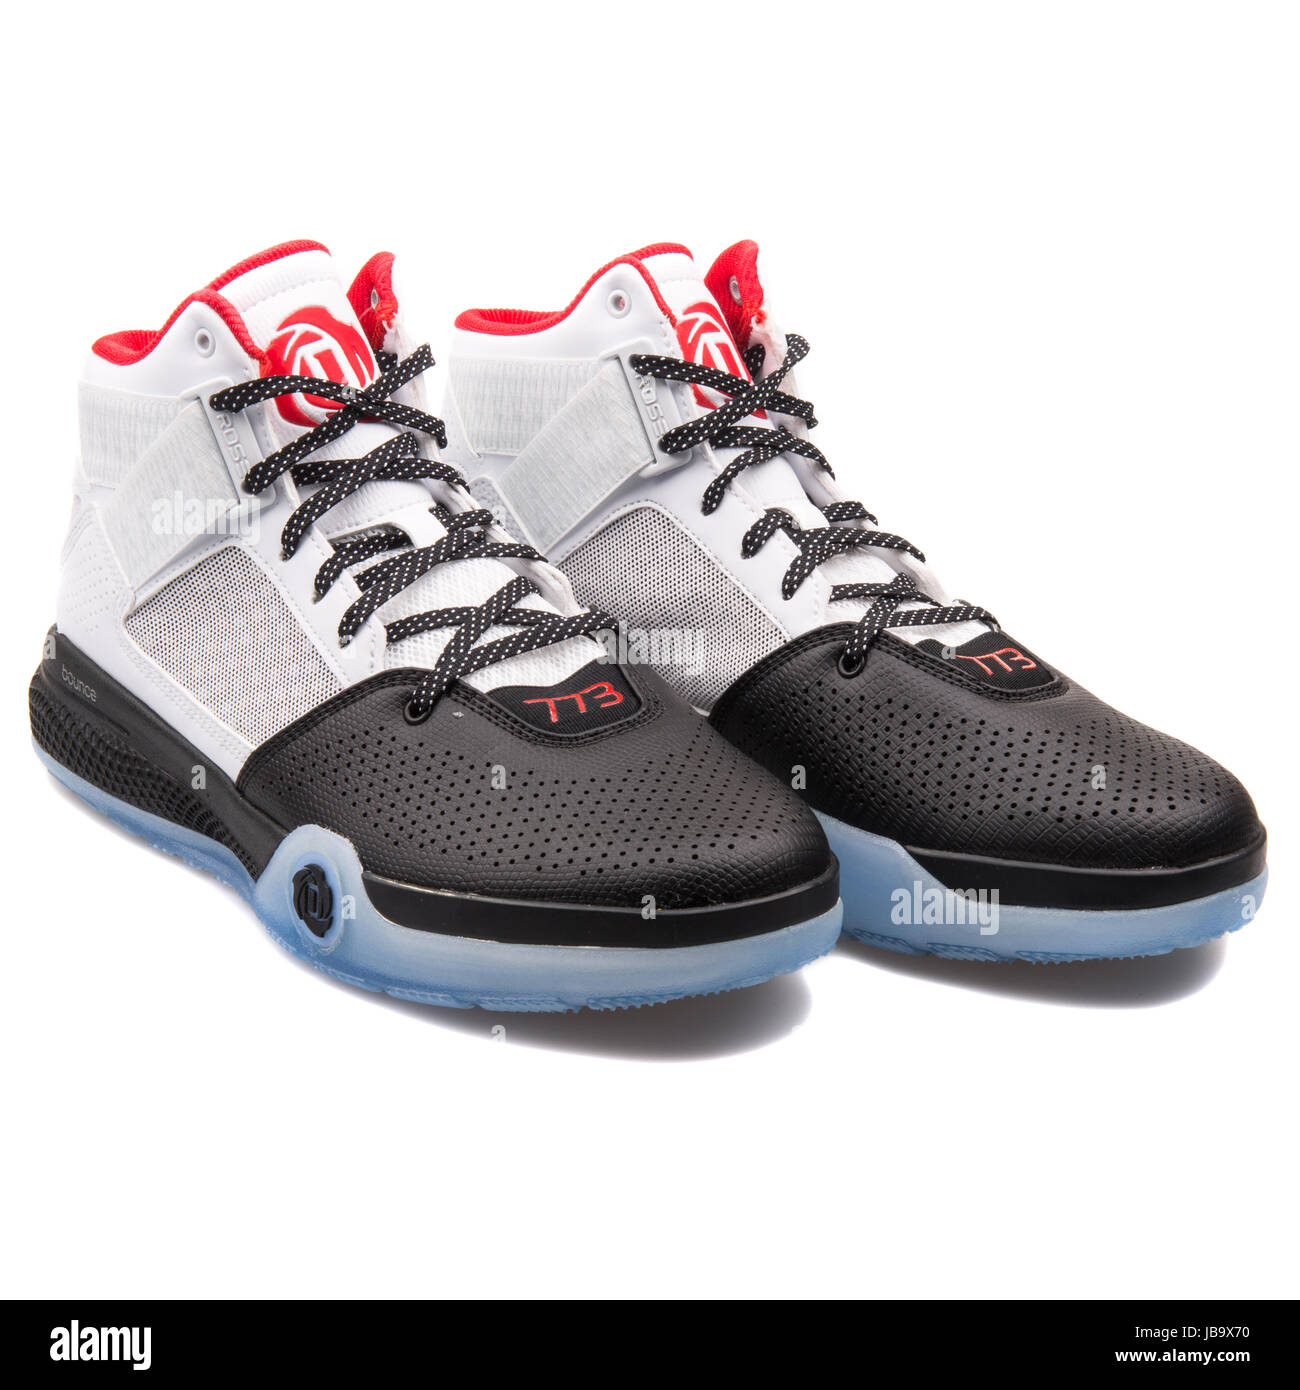 Adidas D Rose 773 IV Blanco, Negro y rojo zapatillas de baloncesto  masculino - D69433 Fotografía de stock - Alamy